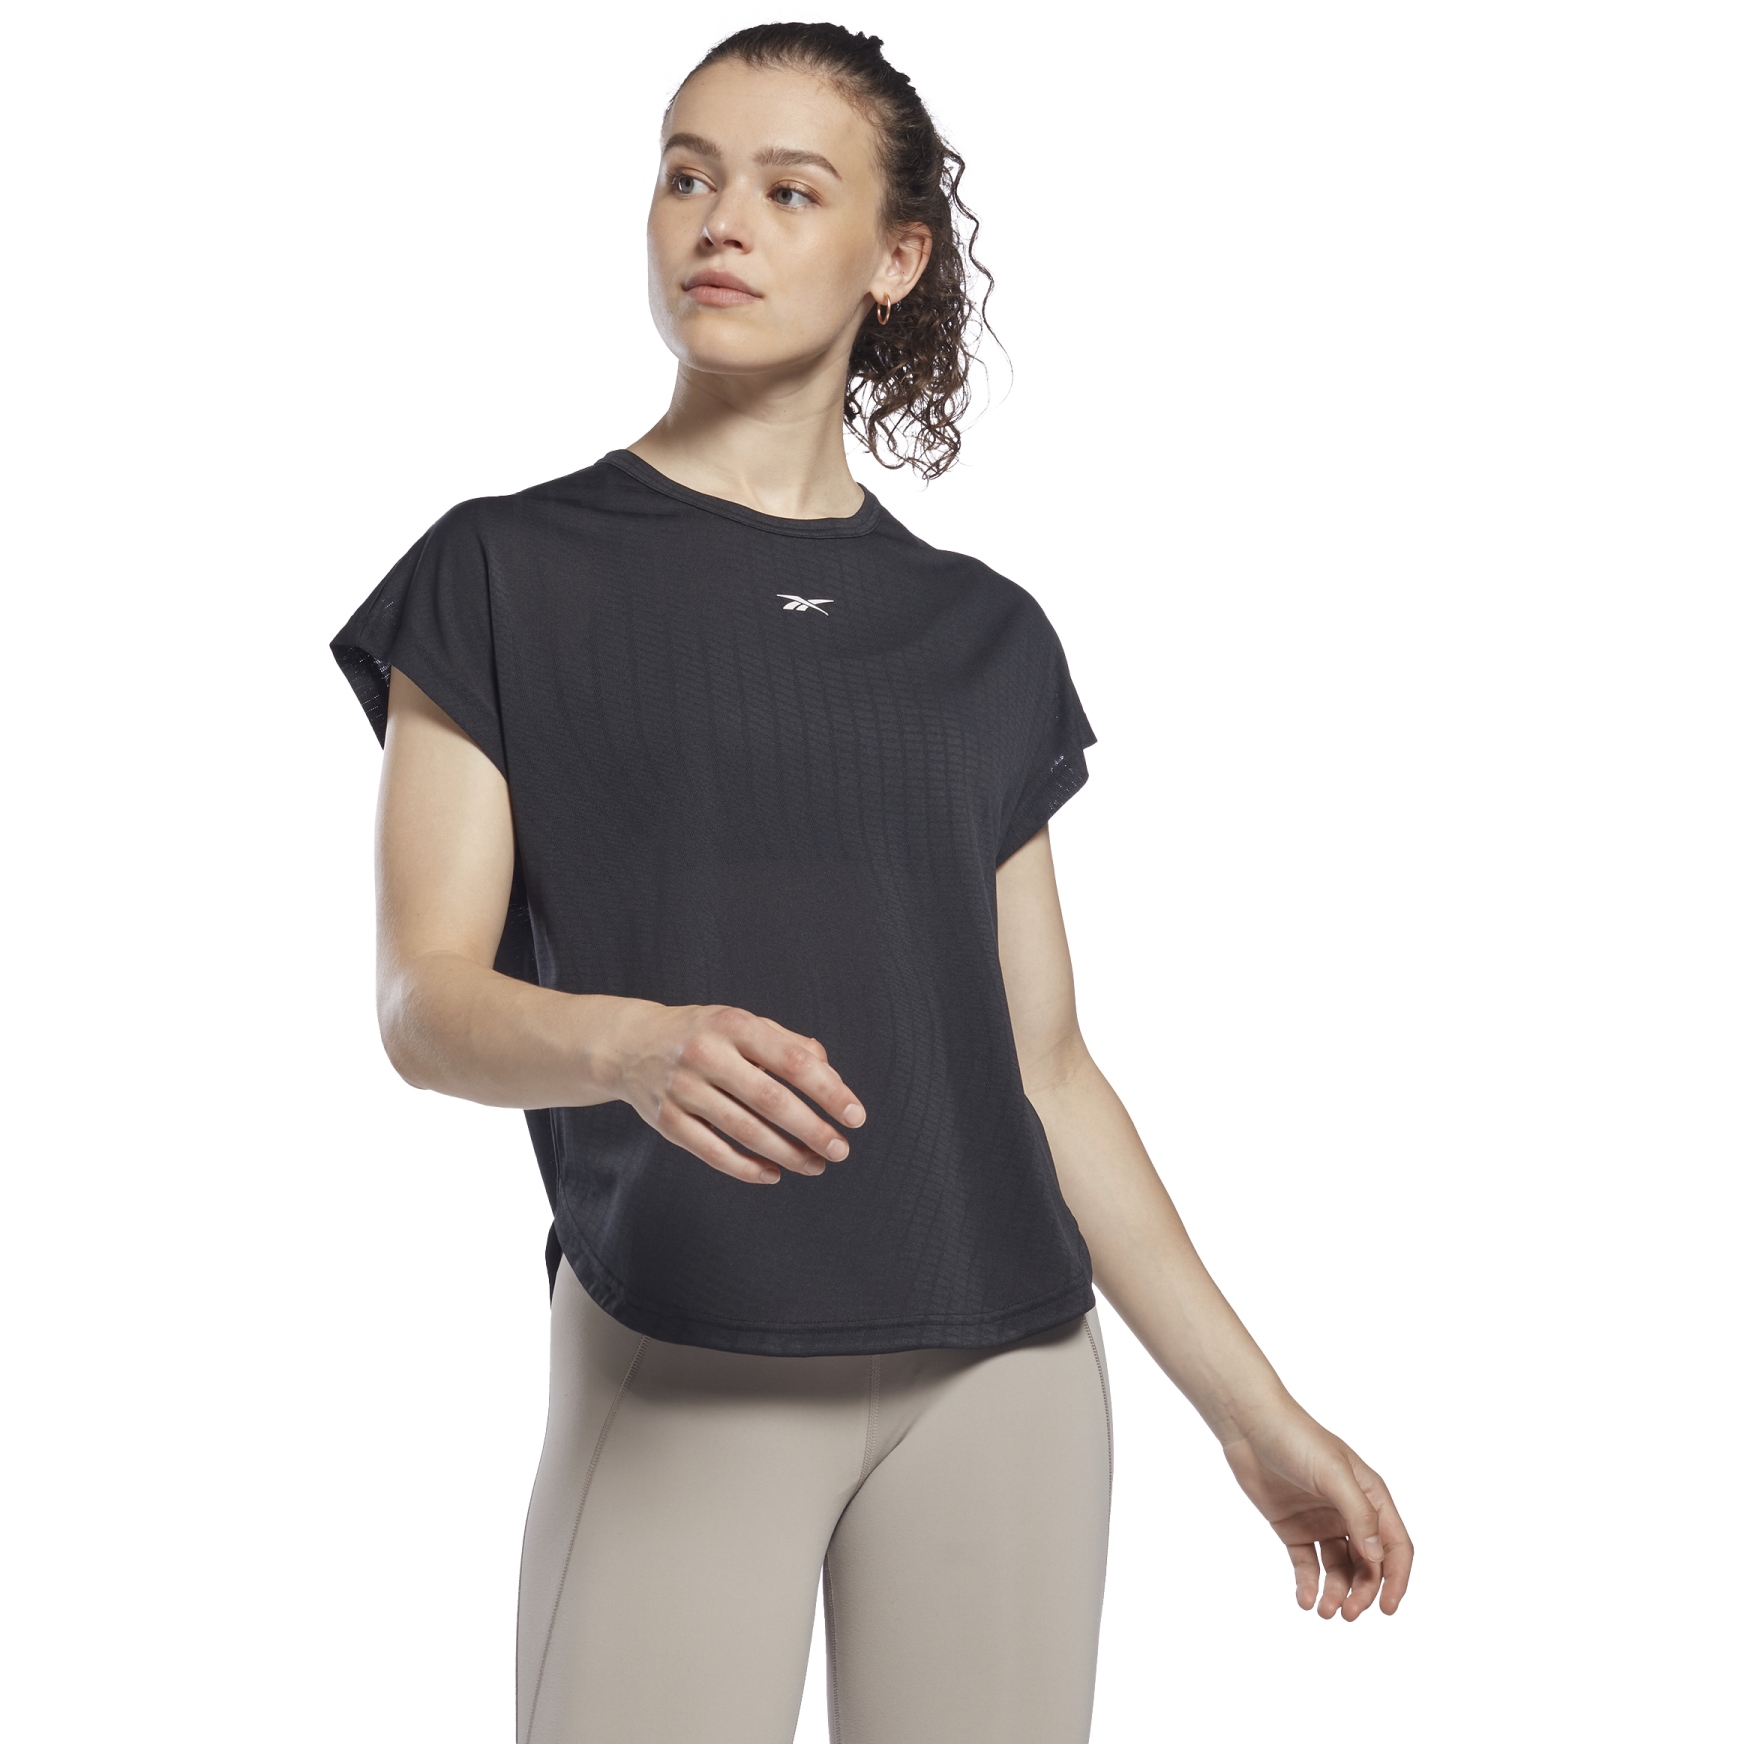 Produktbild von Reebok United By Fitness T-Shirt Damen - schwarz